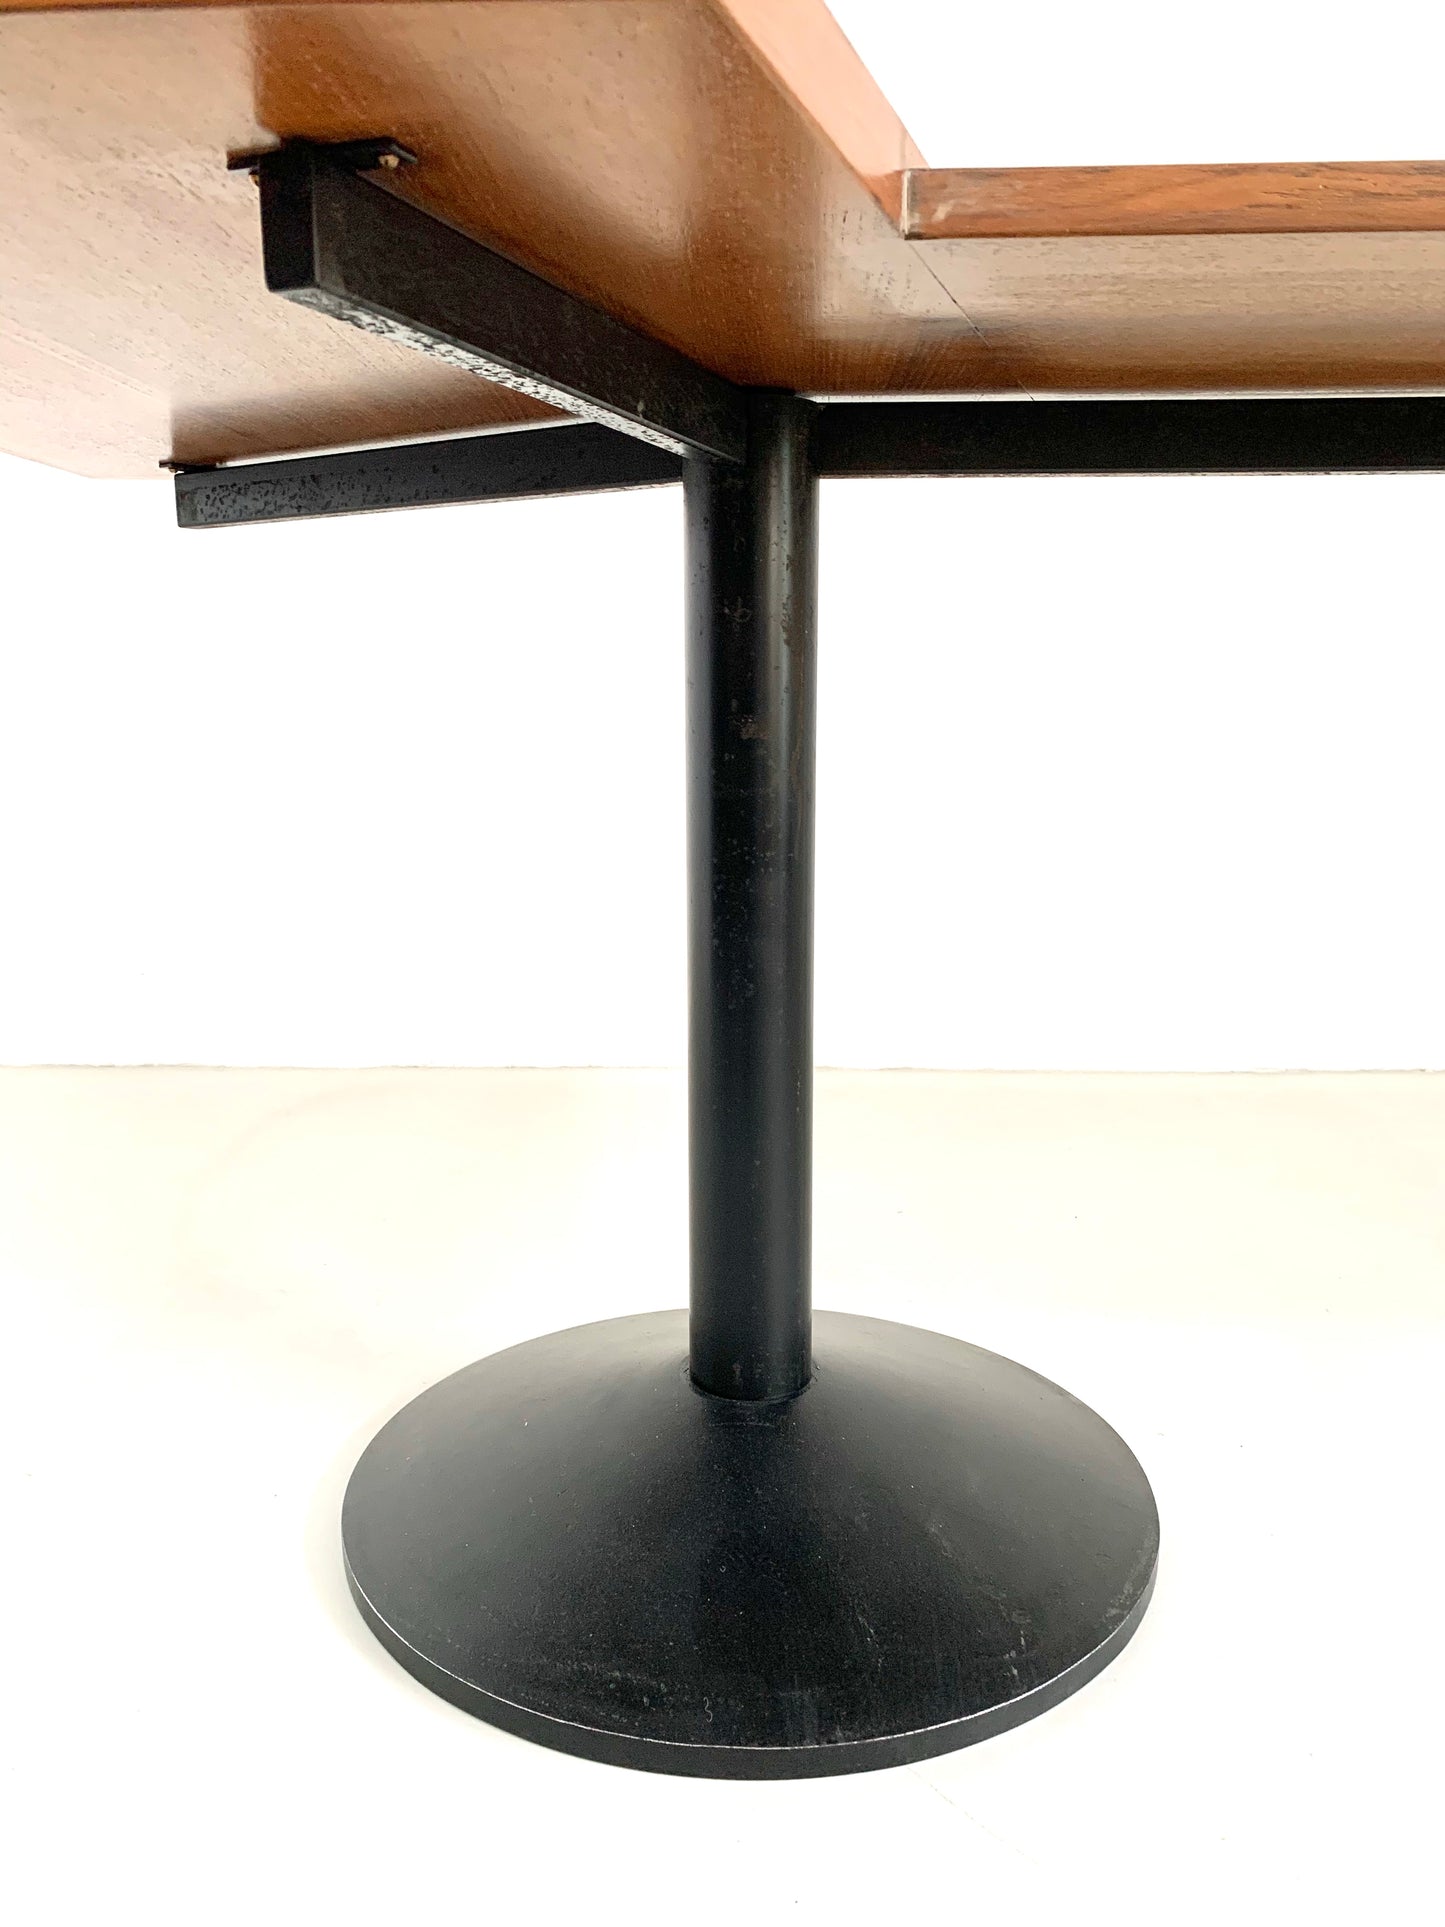 Franco Albini for Poggi Model 840 Stadera Desk, 1958